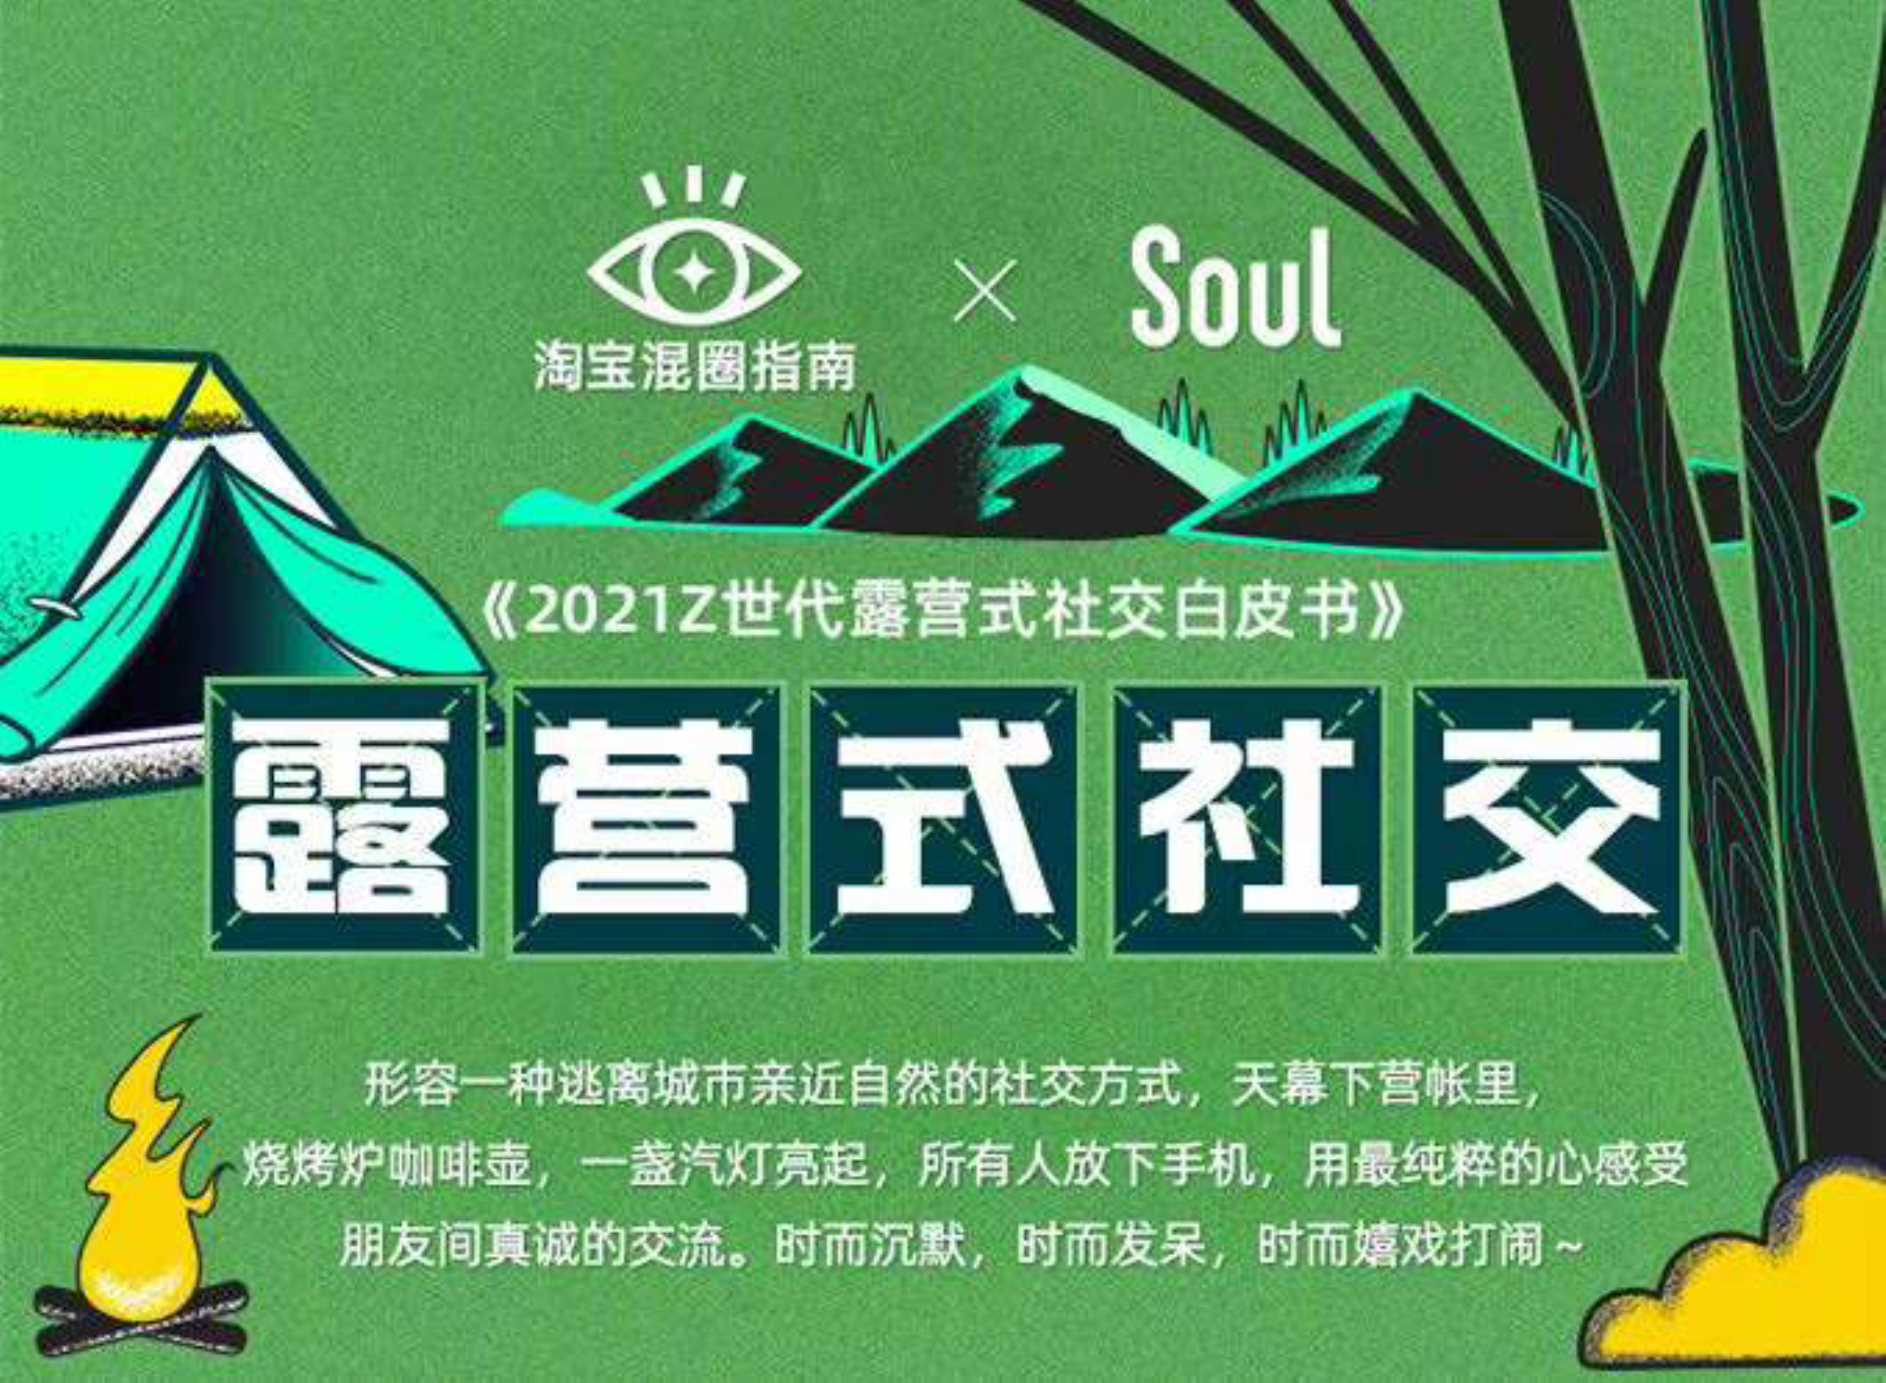 淘宝&Soul-2021 Z世代露营式社交白皮书-2021.10-12页